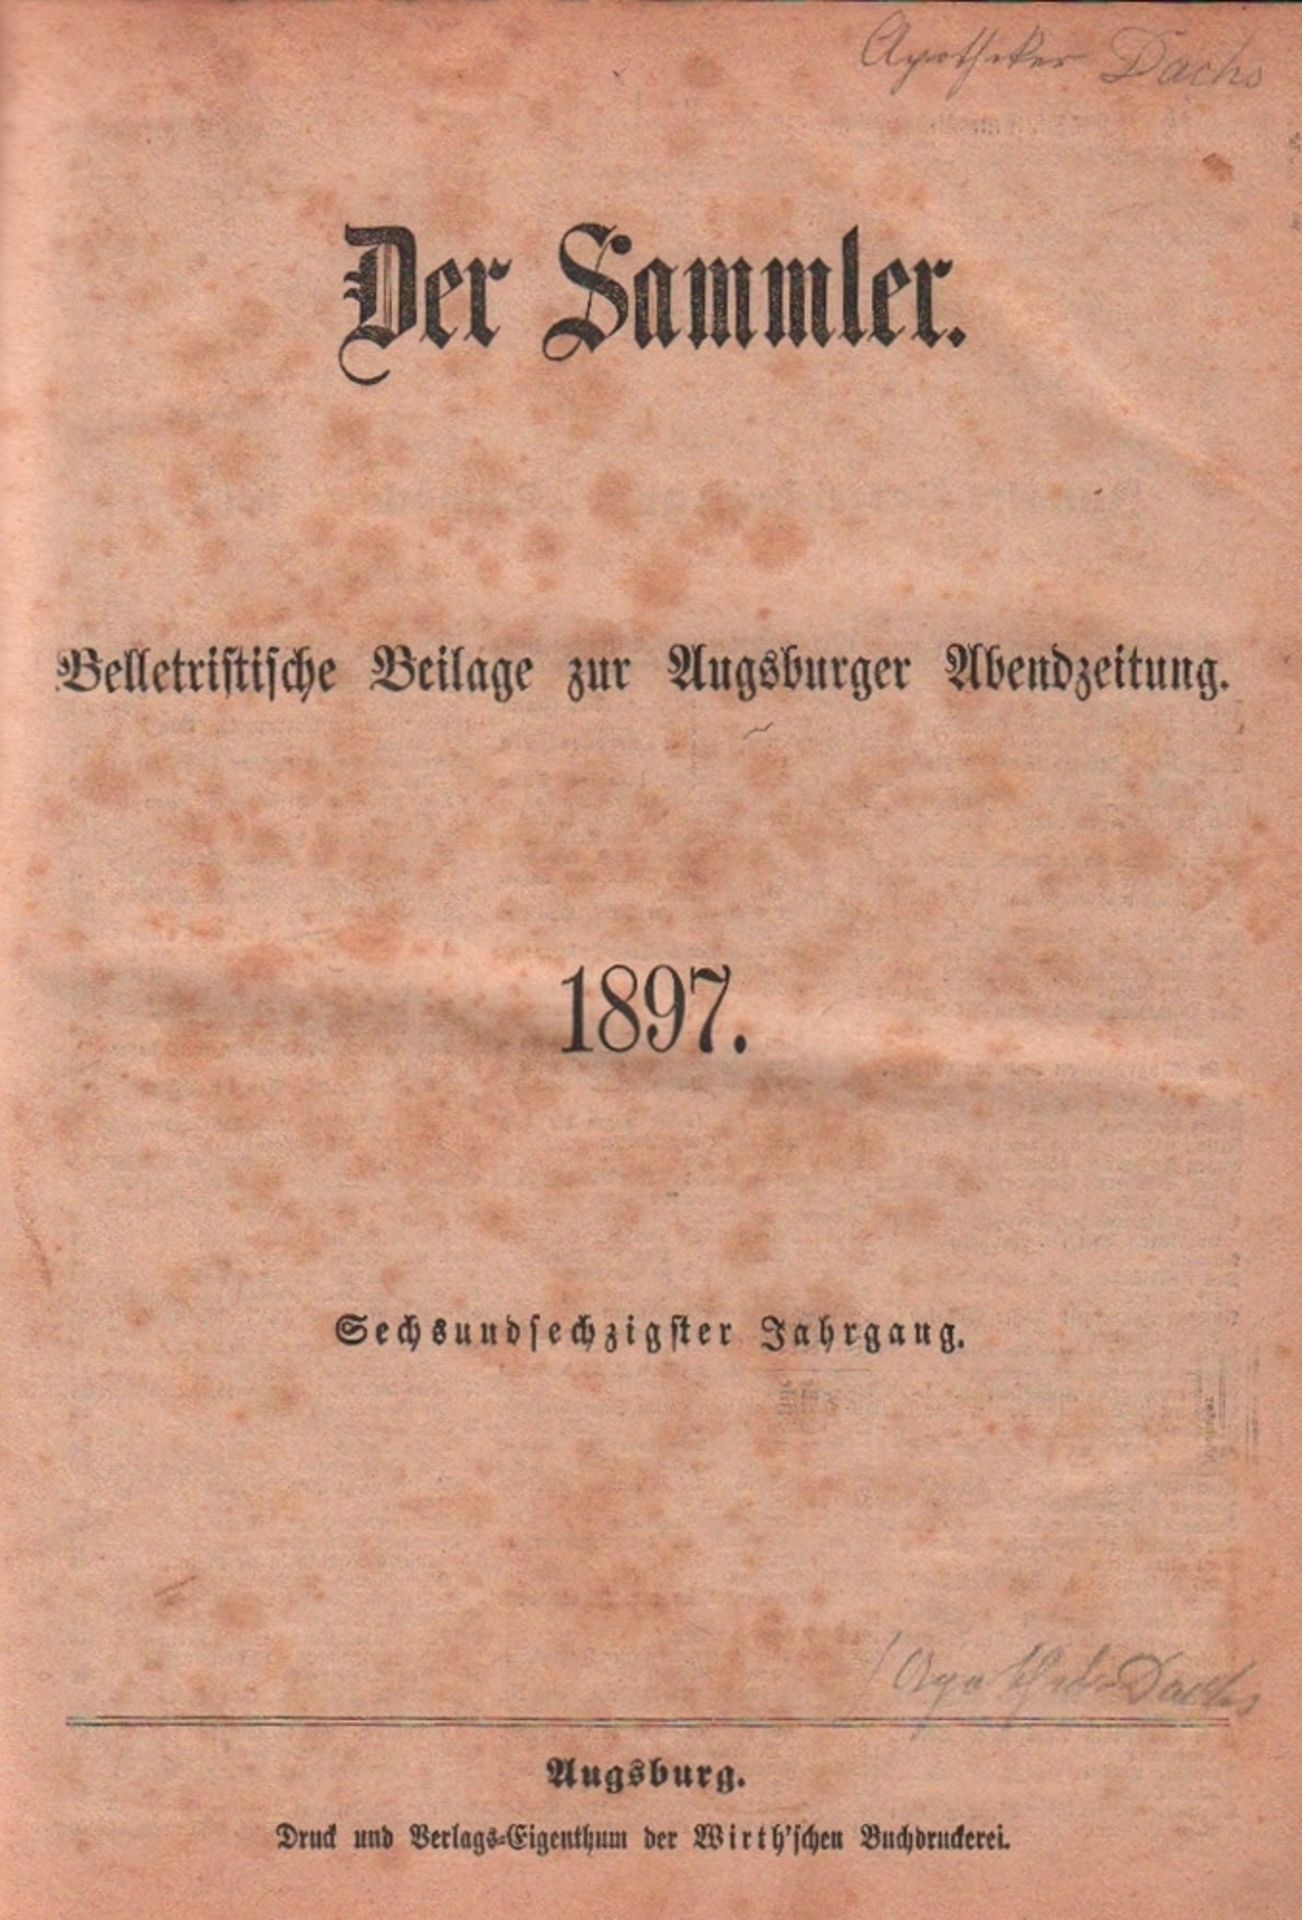 Der Sammler - 1897. Belletristische Beilage zur "Augsburger Abendzeitung". Für die Redaktion